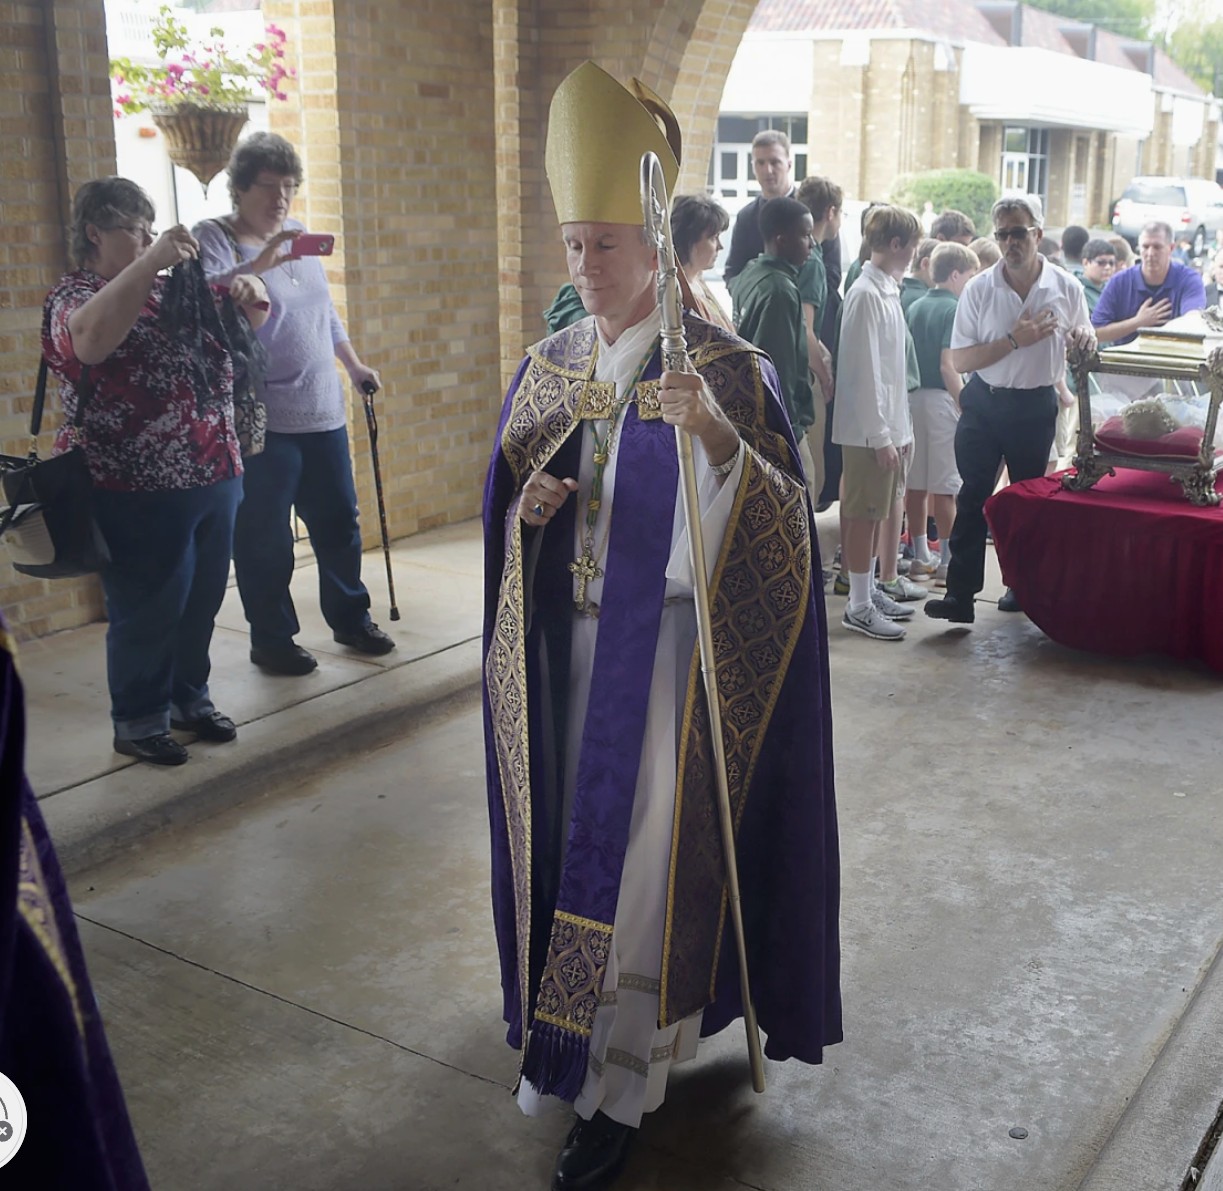 Papal FAFO strikes Texas bishop